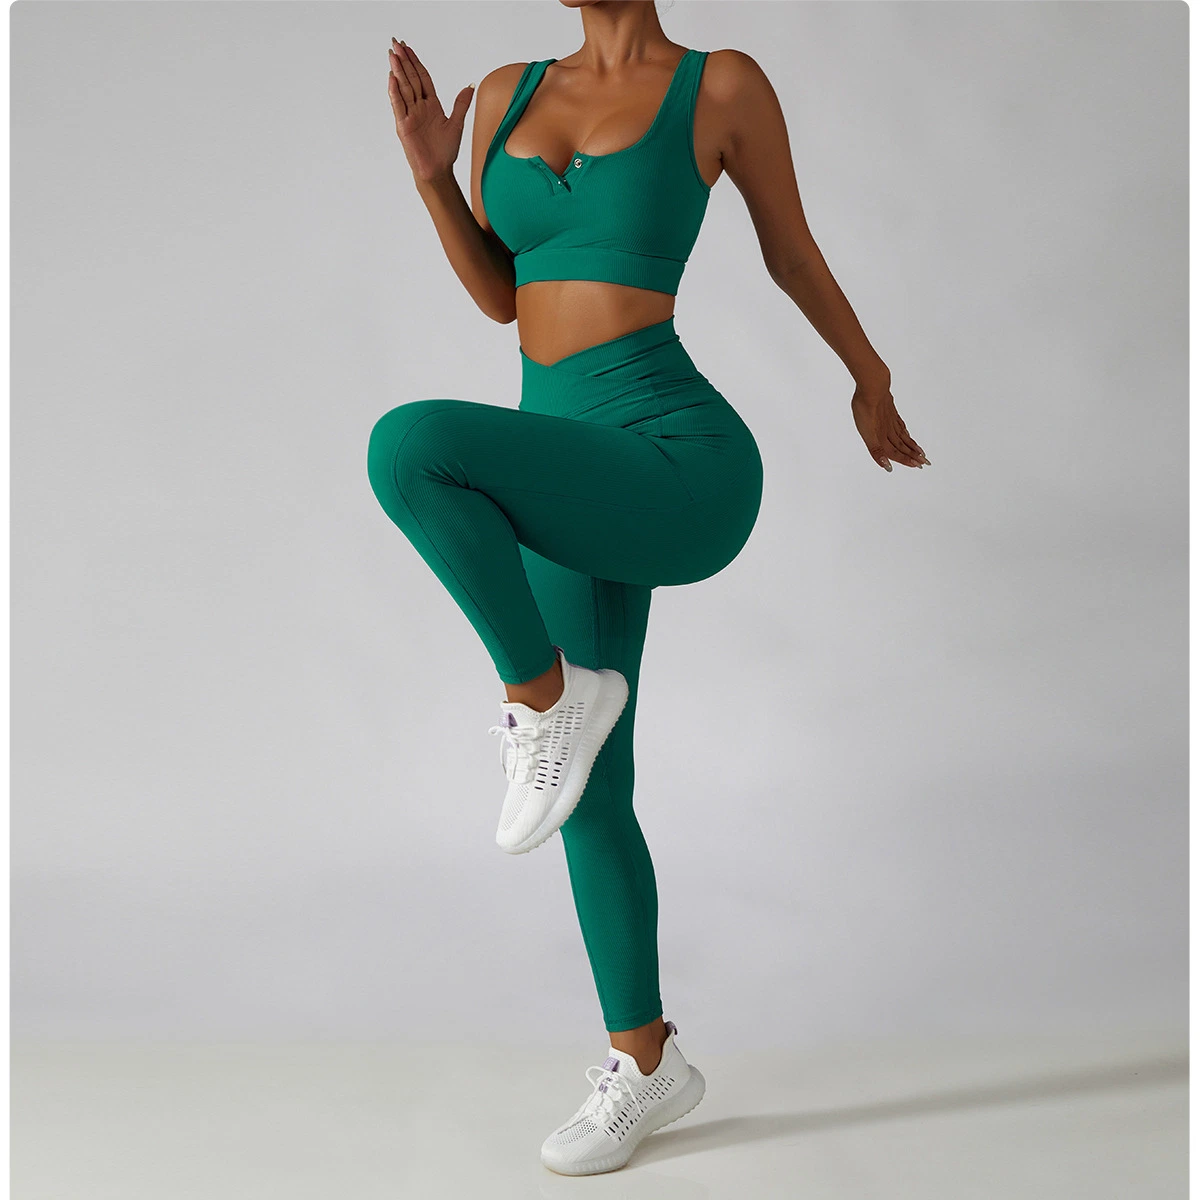 Alta cadera elástica Belleza Sportswear Fitness Leggings Medias cintura alta Levantamiento de cadera Yoga lleve pantalones de Yoga